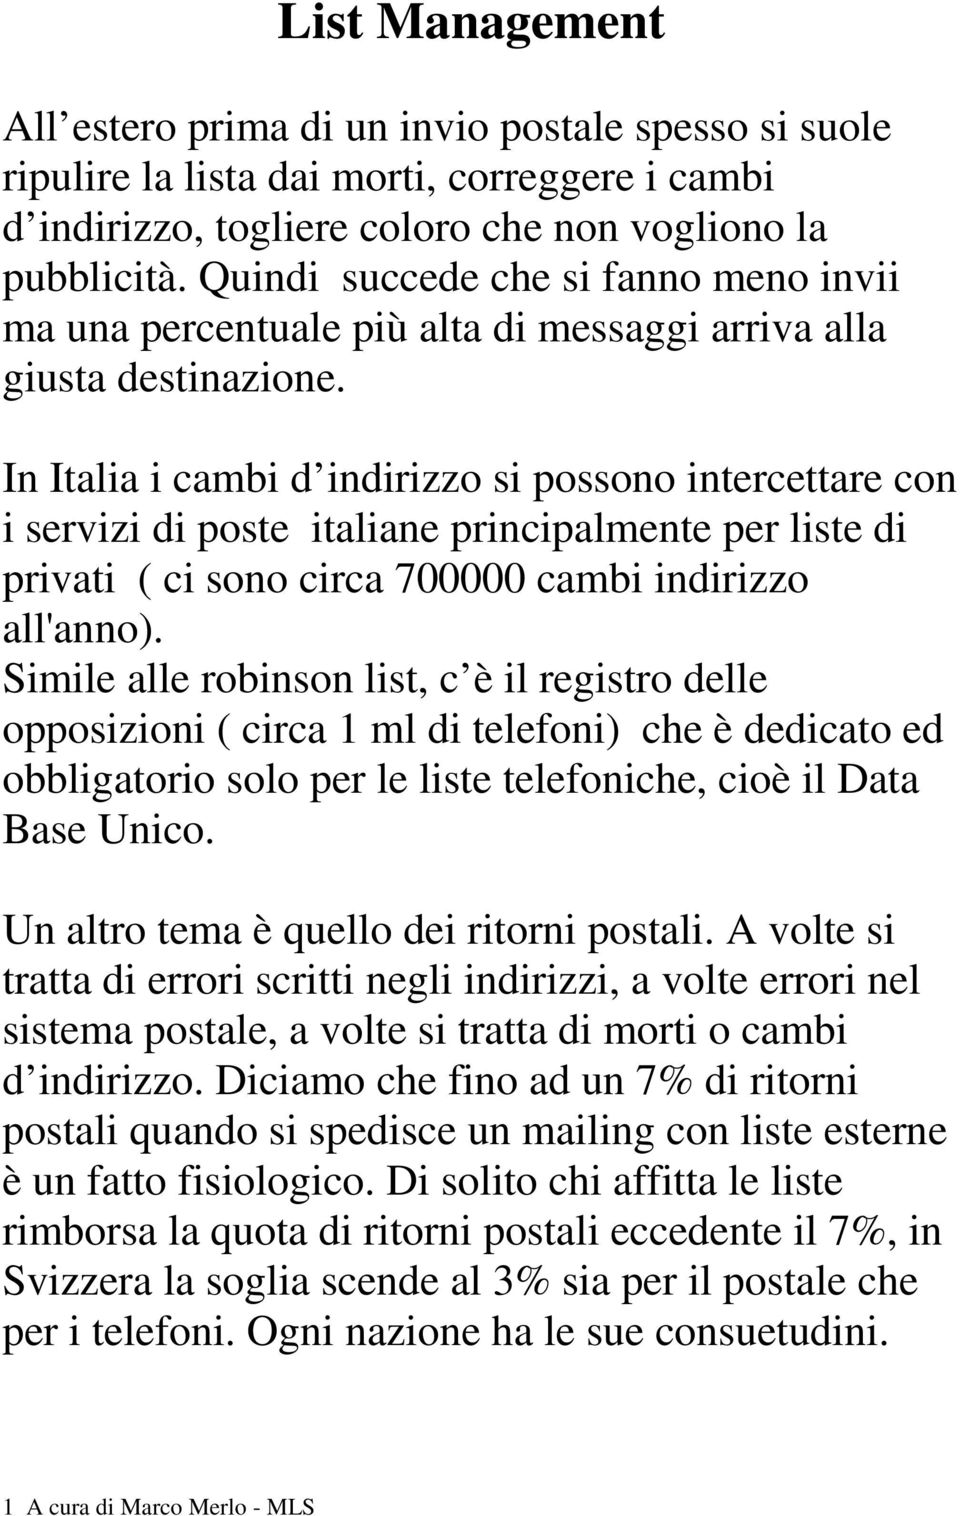 In Italia i cambi d indirizzo si possono intercettare con i servizi di poste italiane principalmente per liste di privati ( ci sono circa 700000 cambi indirizzo all'anno).